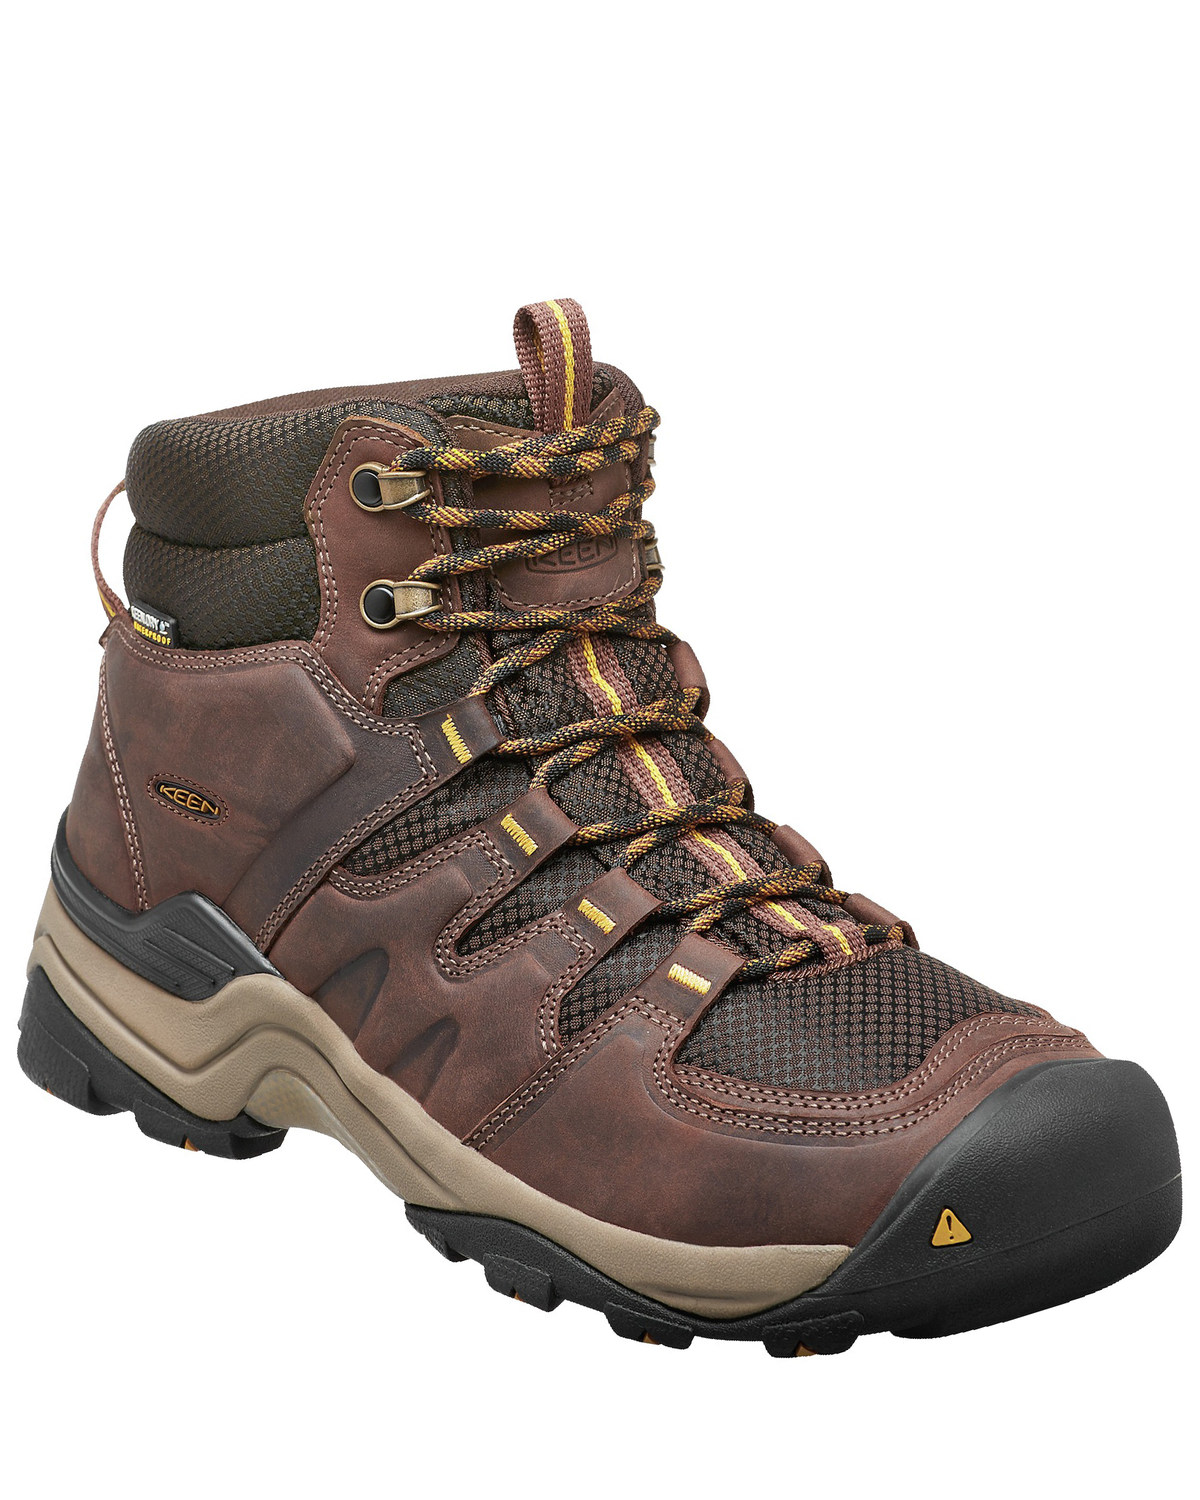 Keen Men's Gypsum II Waterproof Hiking Boots